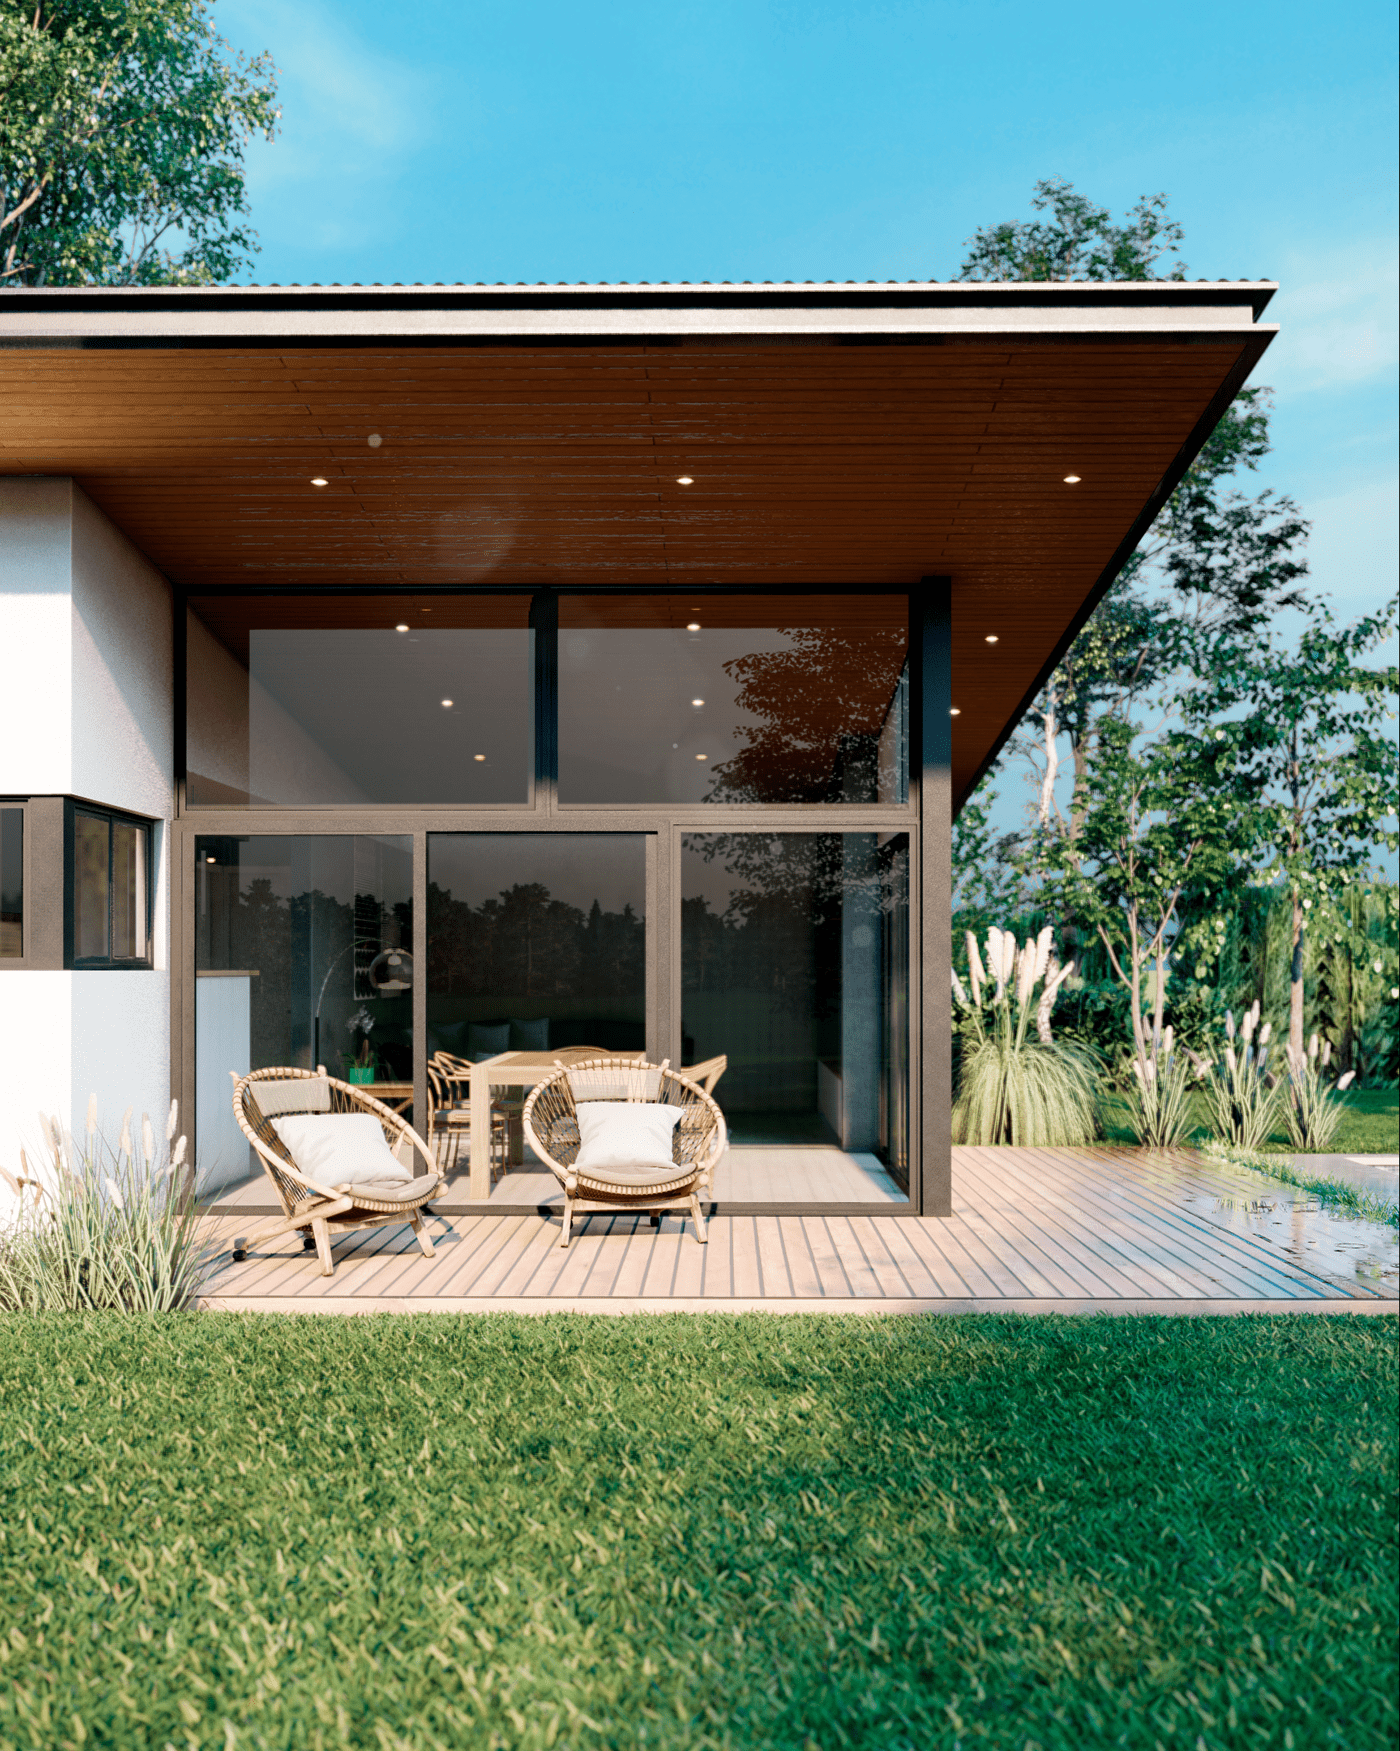 architecture archviz arquitectura design exterior home house modern Render visualization